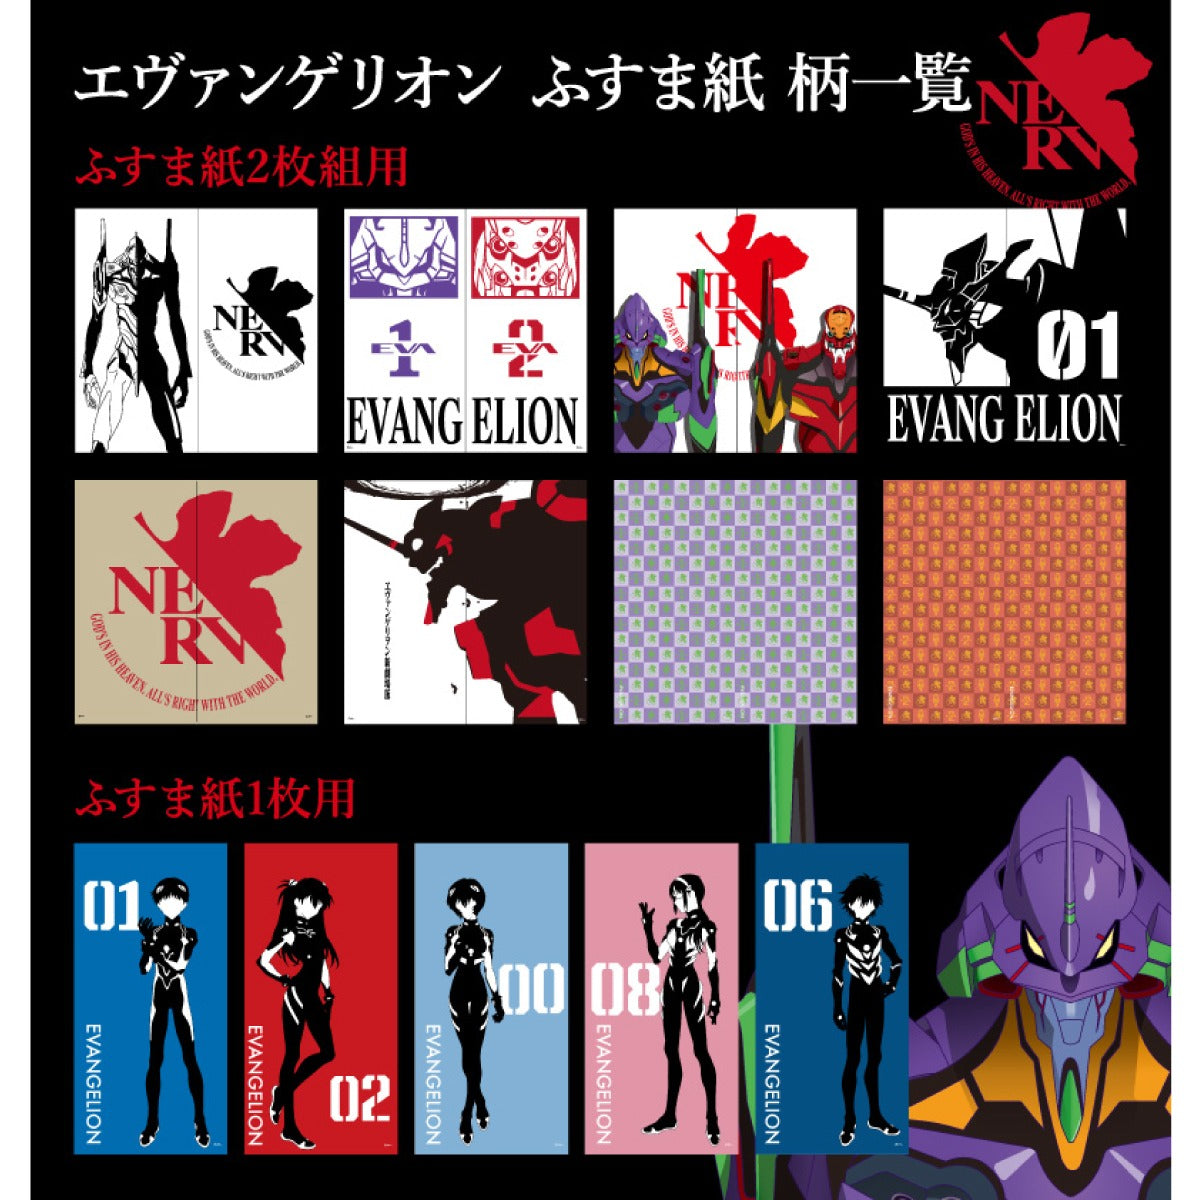 Fusuma paper Evangelion EVA-009F Width 92cm x Length 182cm 2 sheets 1 set Asahipen